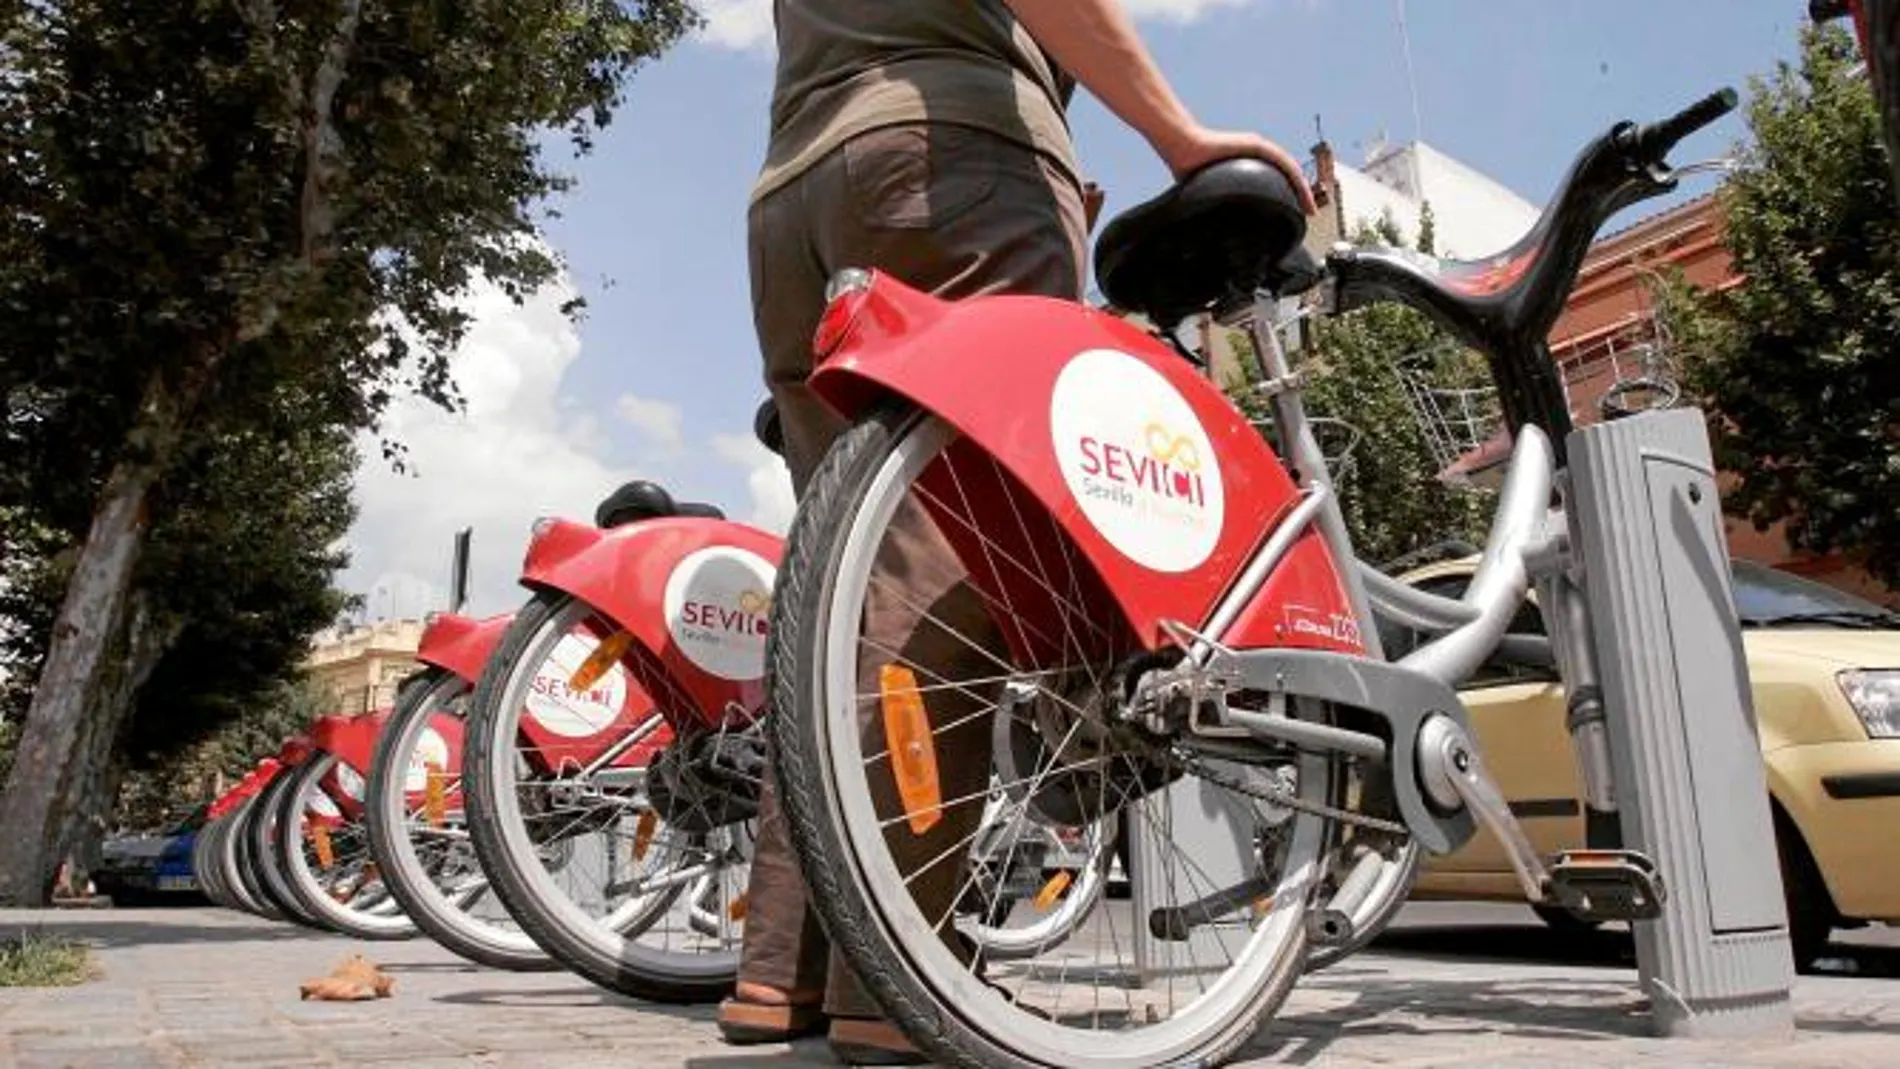 La empresa JCDecaux tiene la concesión del alquiler público de biciciletas